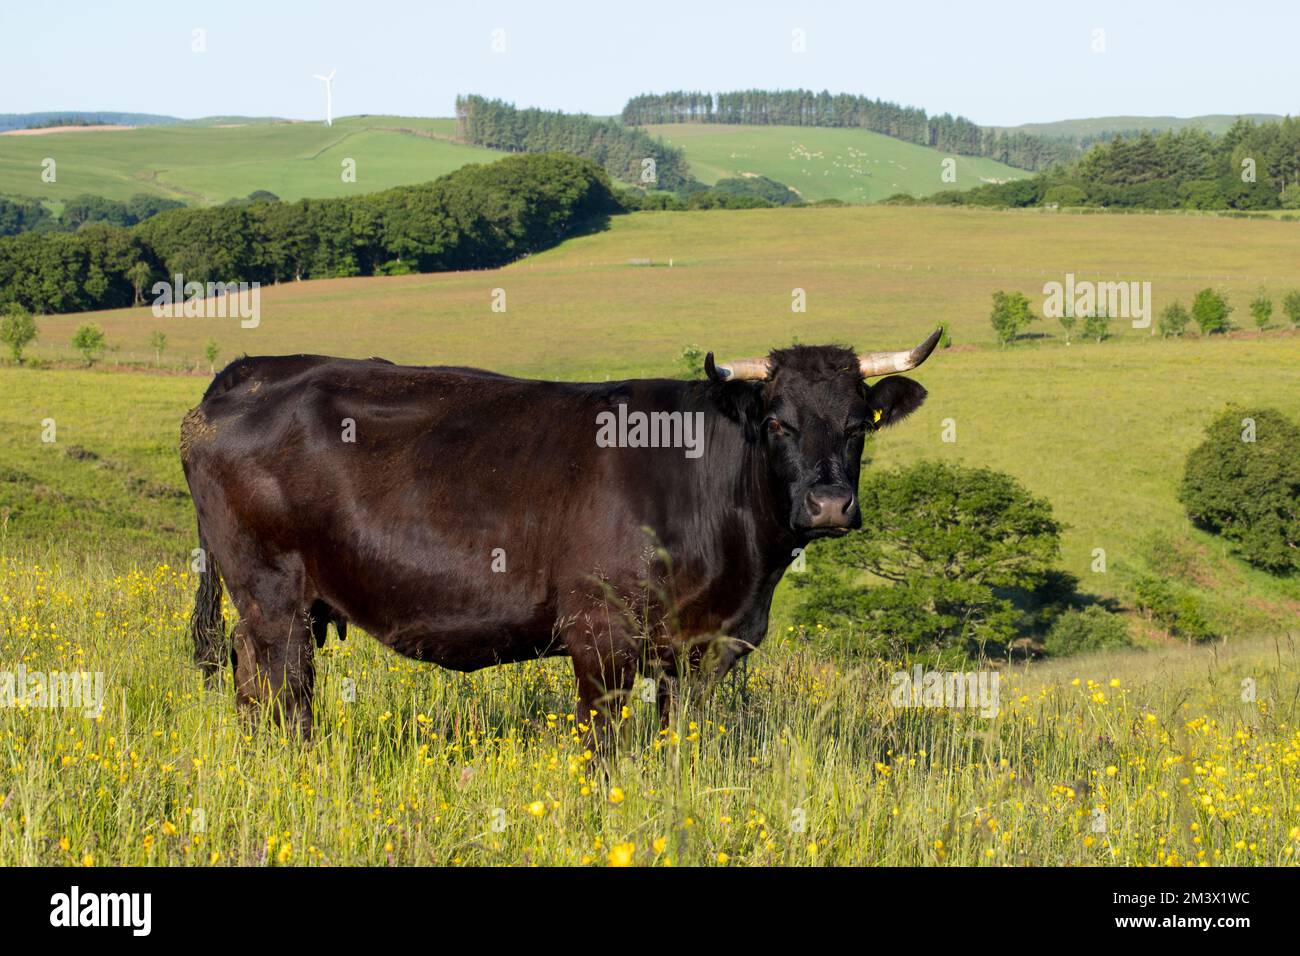 Un suckler noir gallois dans une ferme biologique. Powys, pays de Galles. Juin. Banque D'Images